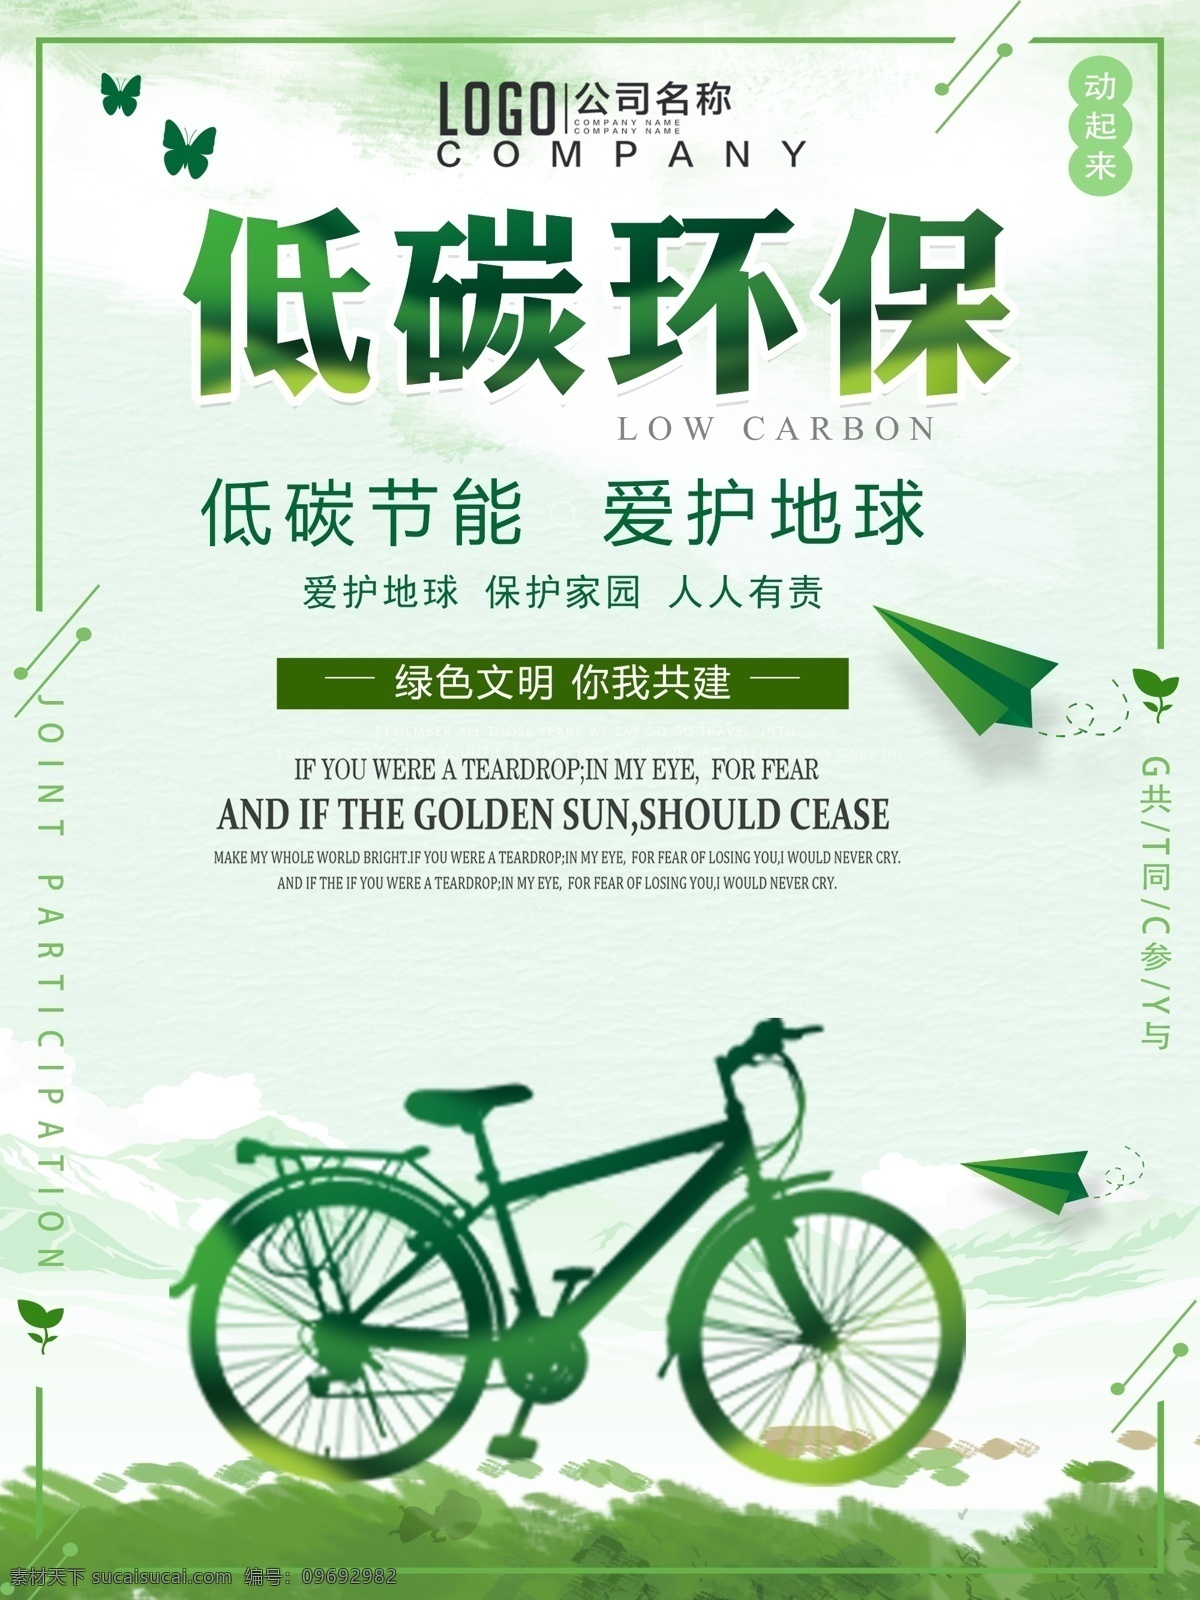 绿色 低 碳 滑板 公益 海报 低碳环保 环保海报 环保广告 环保公益广告 环保设计 低碳环保海报 低碳公益广告